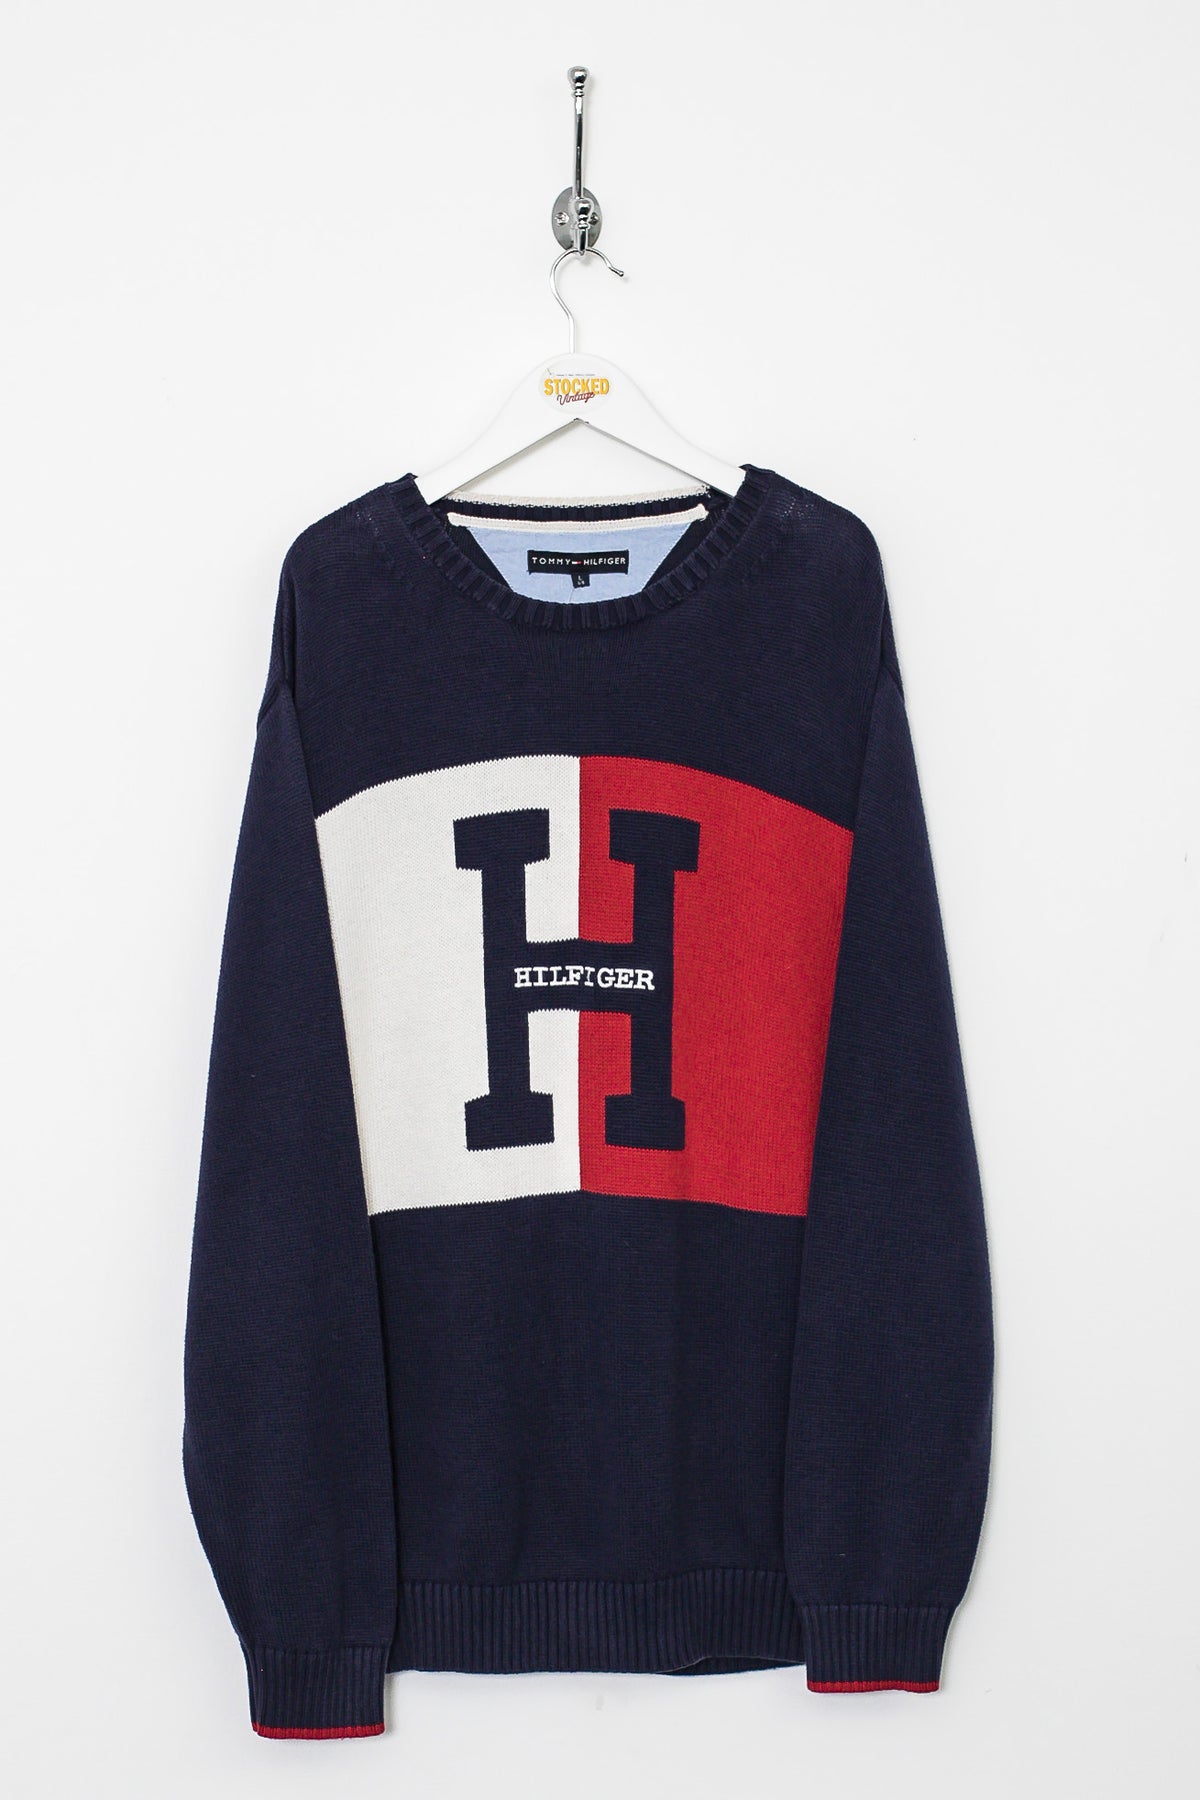 00s Tommy Hilfiger Knit Sweatshirt (L)